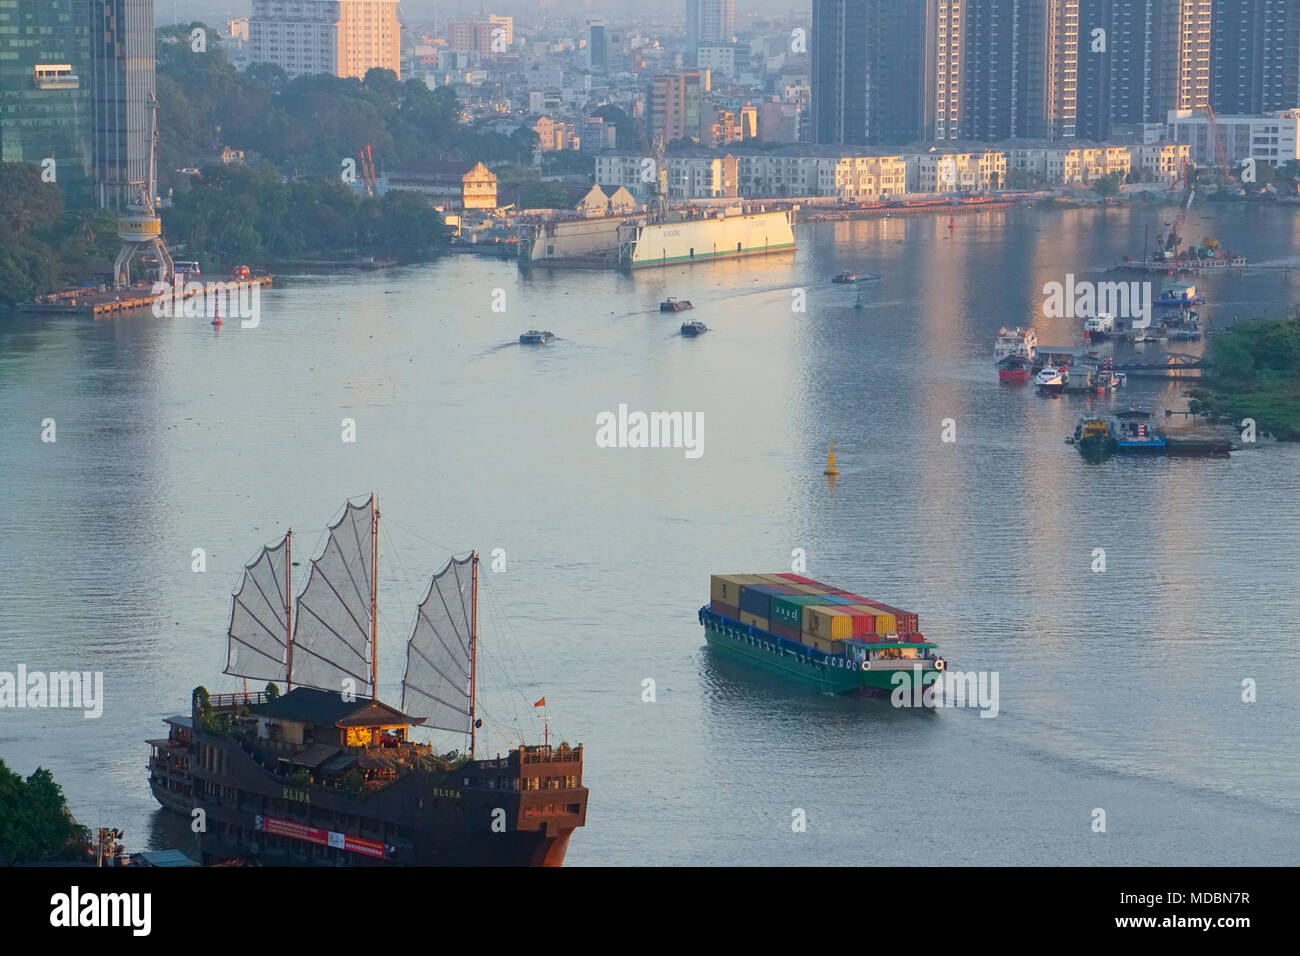 L'Elisa ristorante galleggiante sul fiume Saigon barche, la città di Ho Chi Minh (Saigon) Vietnam Foto Stock